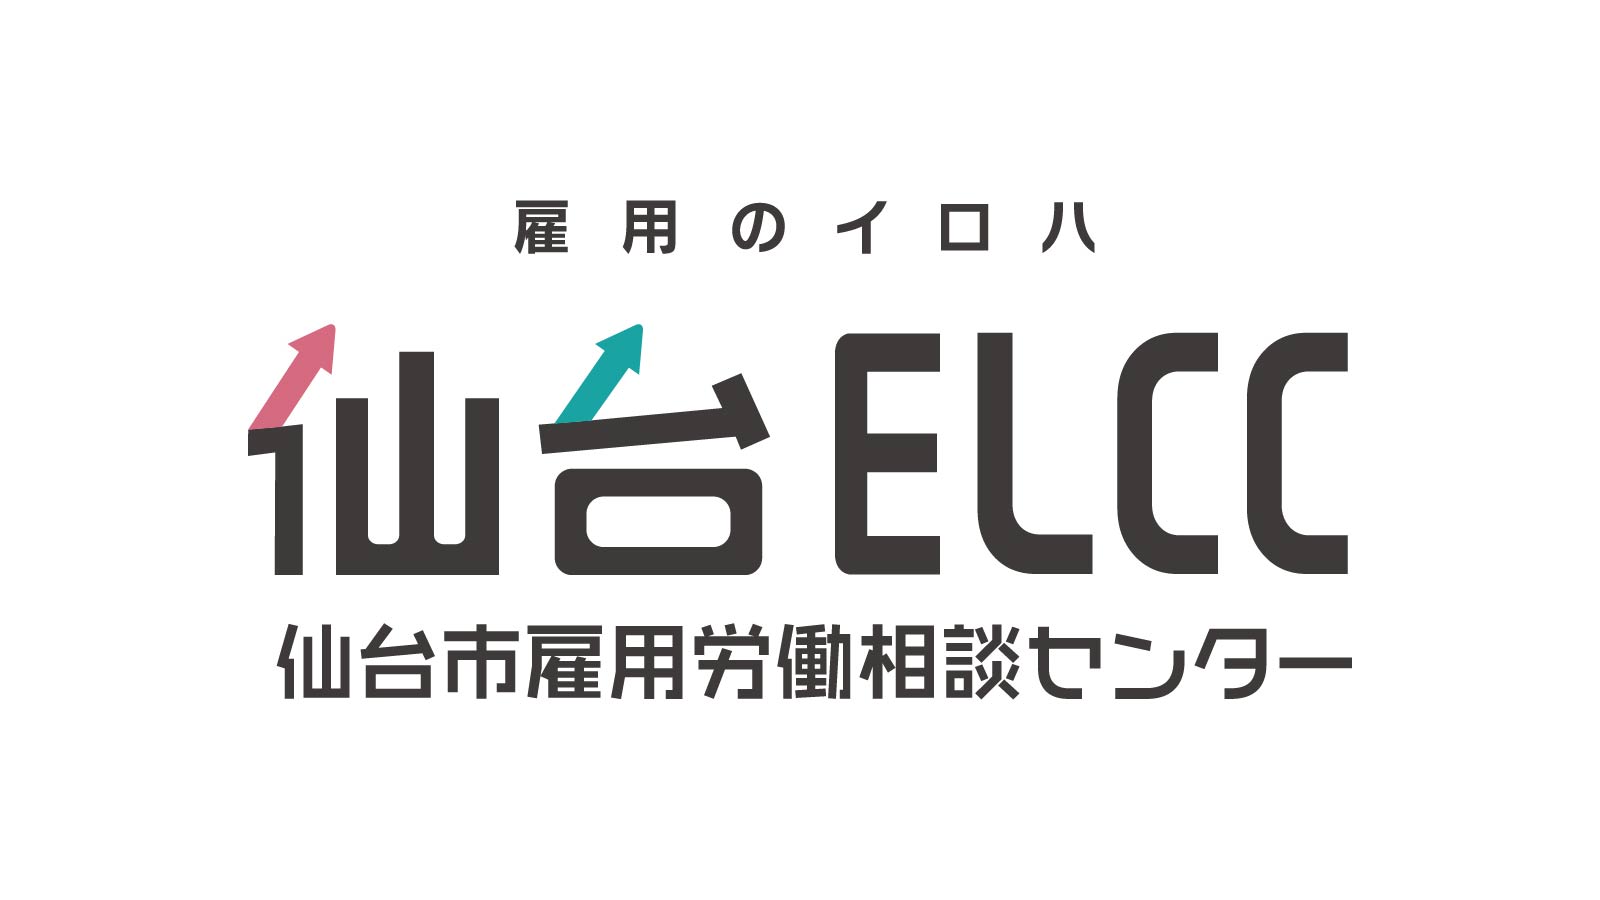 仙台ELCC 主催セミナー 「労使間紛争を未然に防ぐための就業規則上の注意点について」